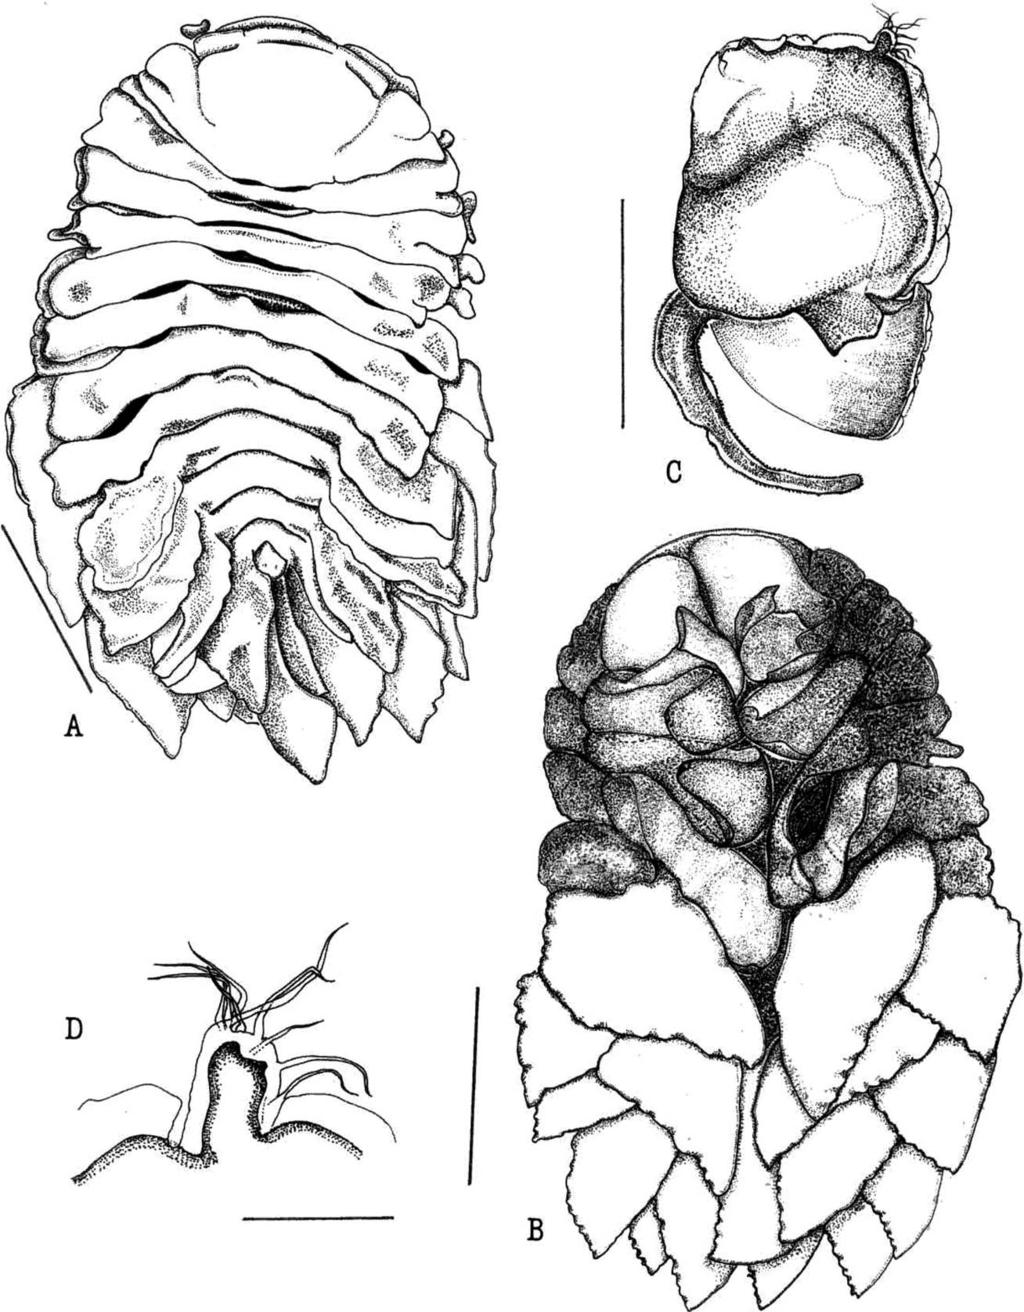 ROMÁN-CONTRERAS AND BOYKO: NEW BOPYRID INFESTING GALATHEIDS 371 Fig. 1. Female of Bathione magnafolia n. gen., n. sp., holotype (EMU-5460).